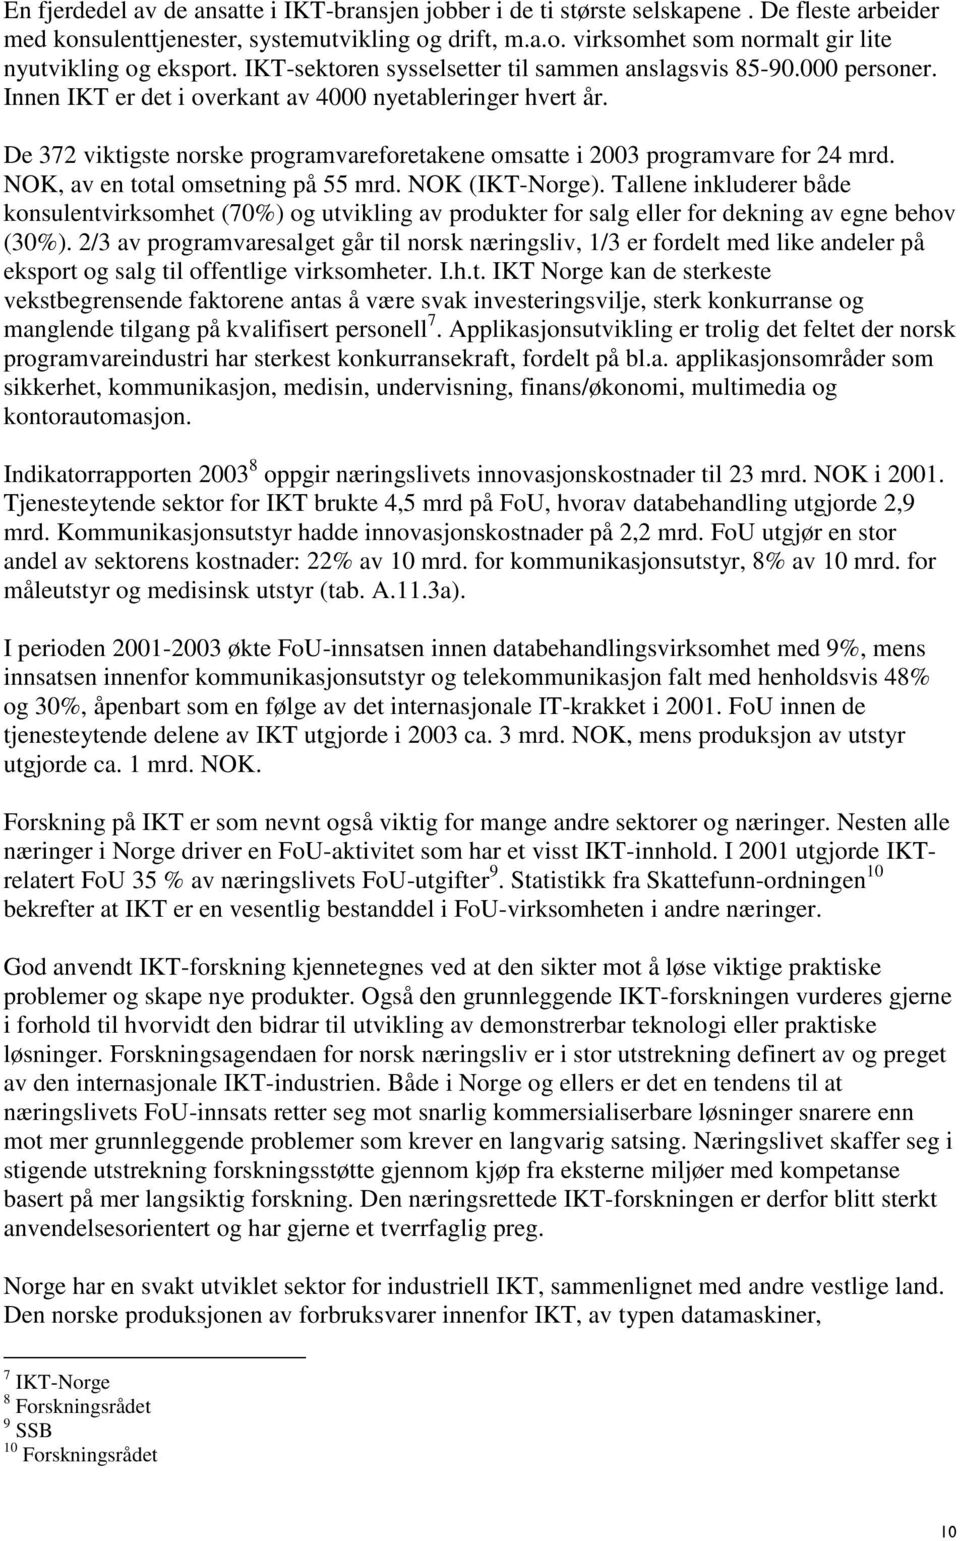 De 372 viktigste norske programvareforetakene omsatte i 2003 programvare for 24 mrd. NOK, av en total omsetning på 55 mrd. NOK (IKT-Norge).